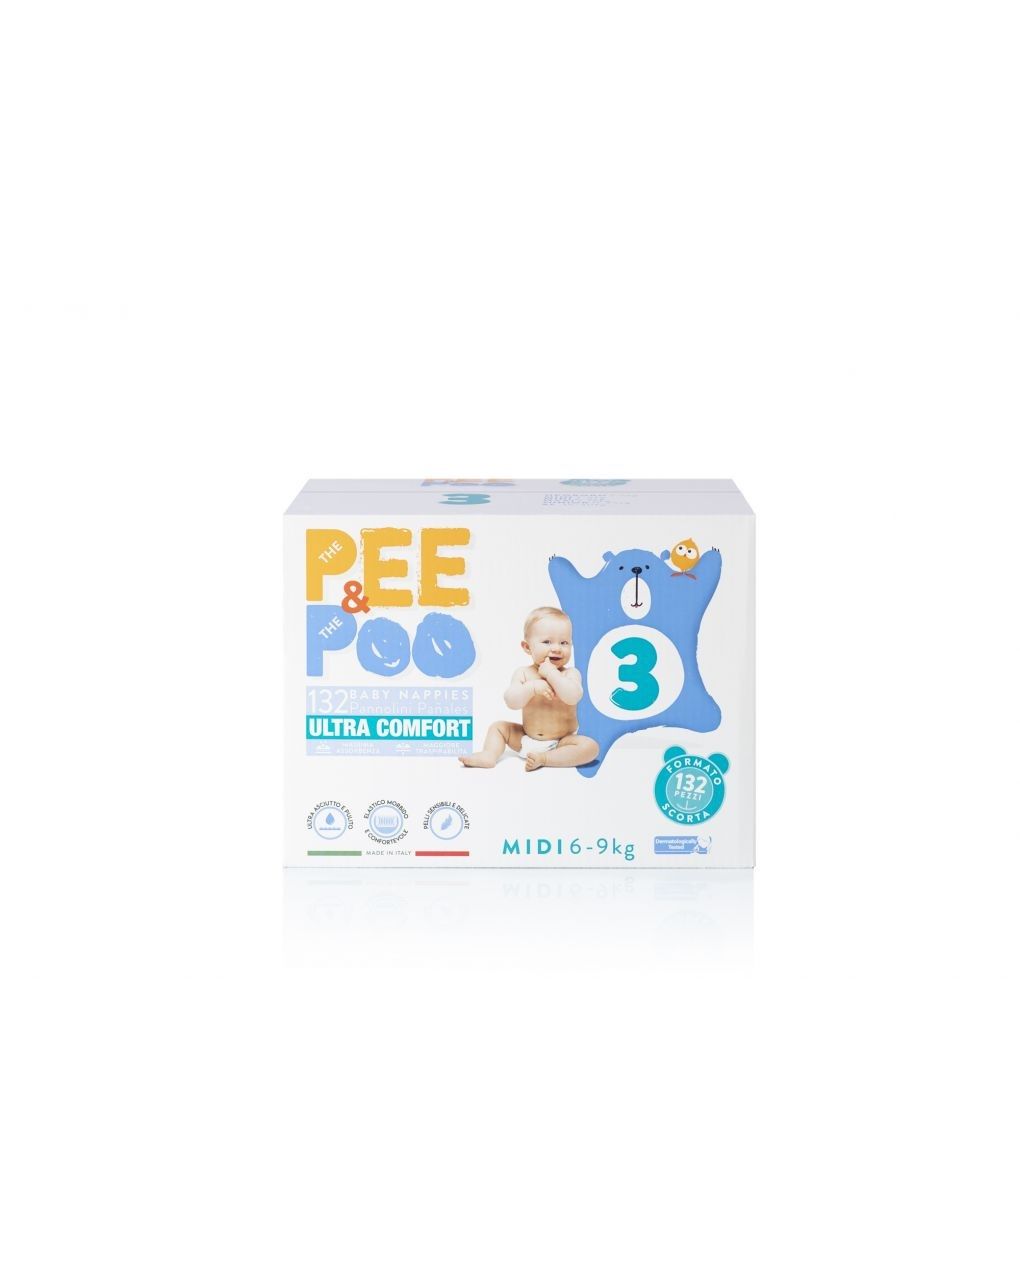 Pee&poo – πάνες μέγεθος jumbo midi 132 τμχ - The Pee & The Poo